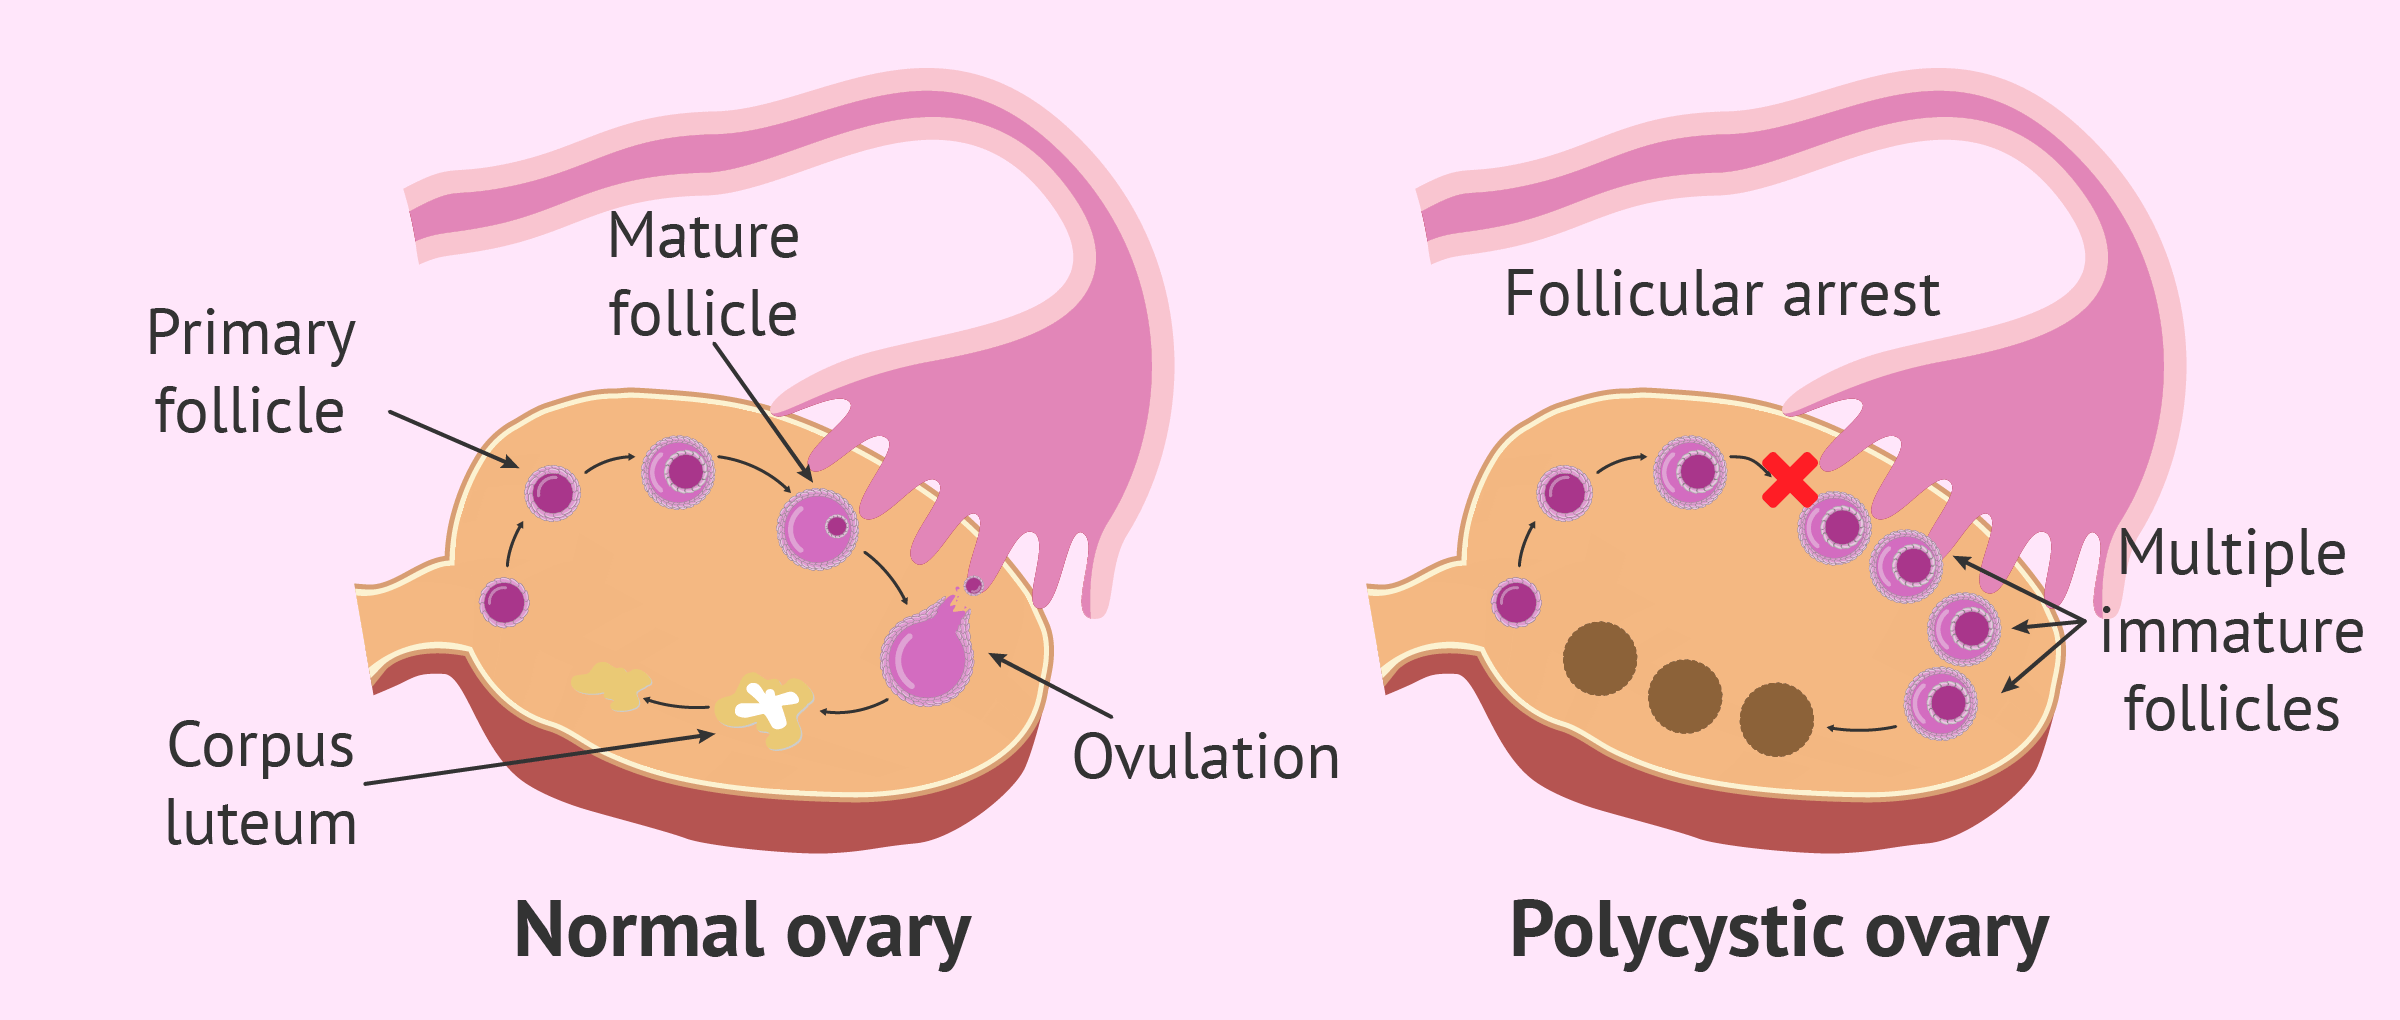 Ovario poliquistico consecuencias